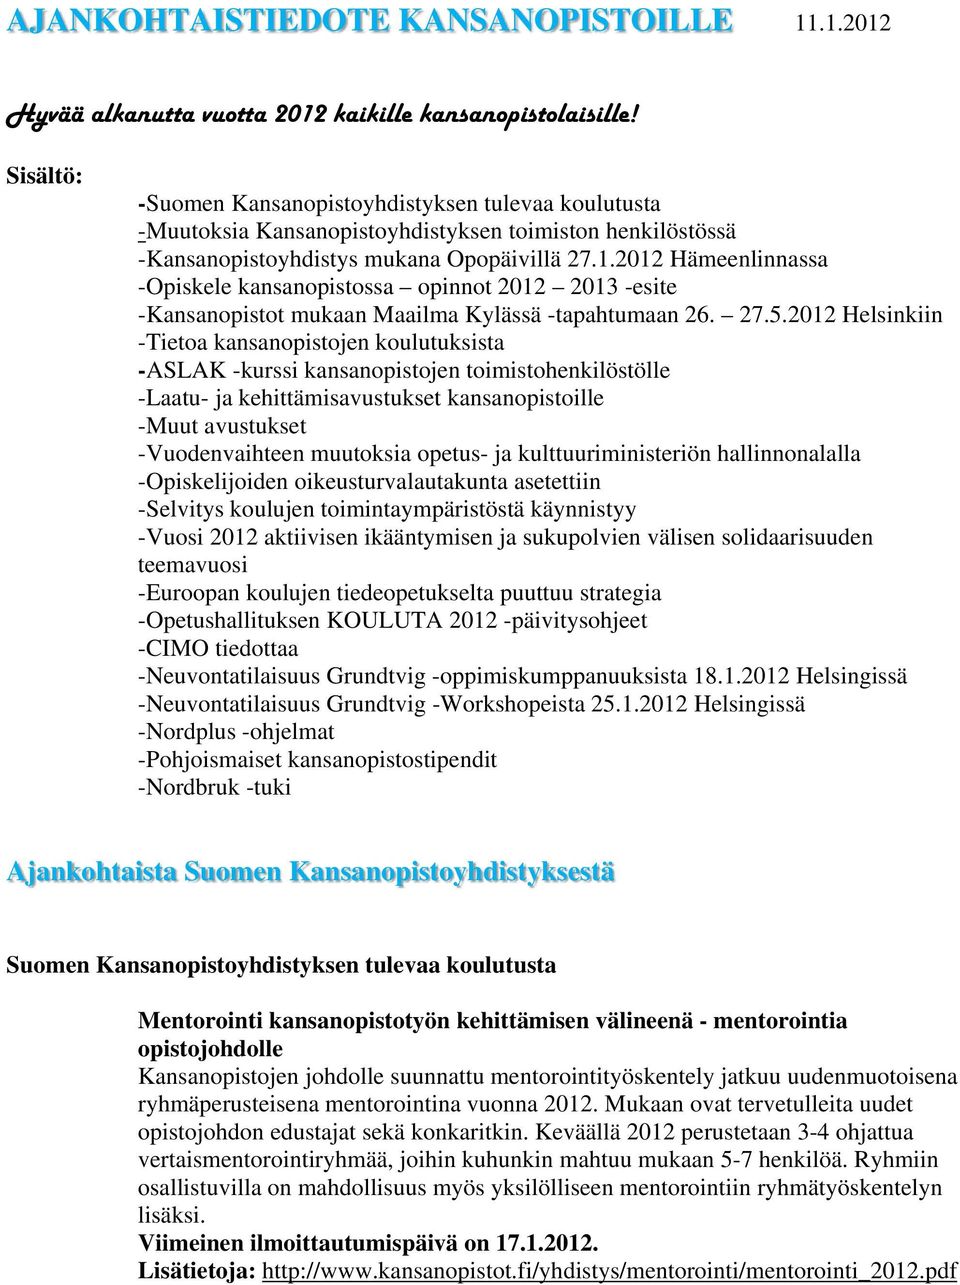 2012 Hämeenlinnassa -Opiskele kansanopistossa opinnot 2012 2013 -esite -Kansanopistot mukaan Maailma Kylässä -tapahtumaan 26. 27.5.